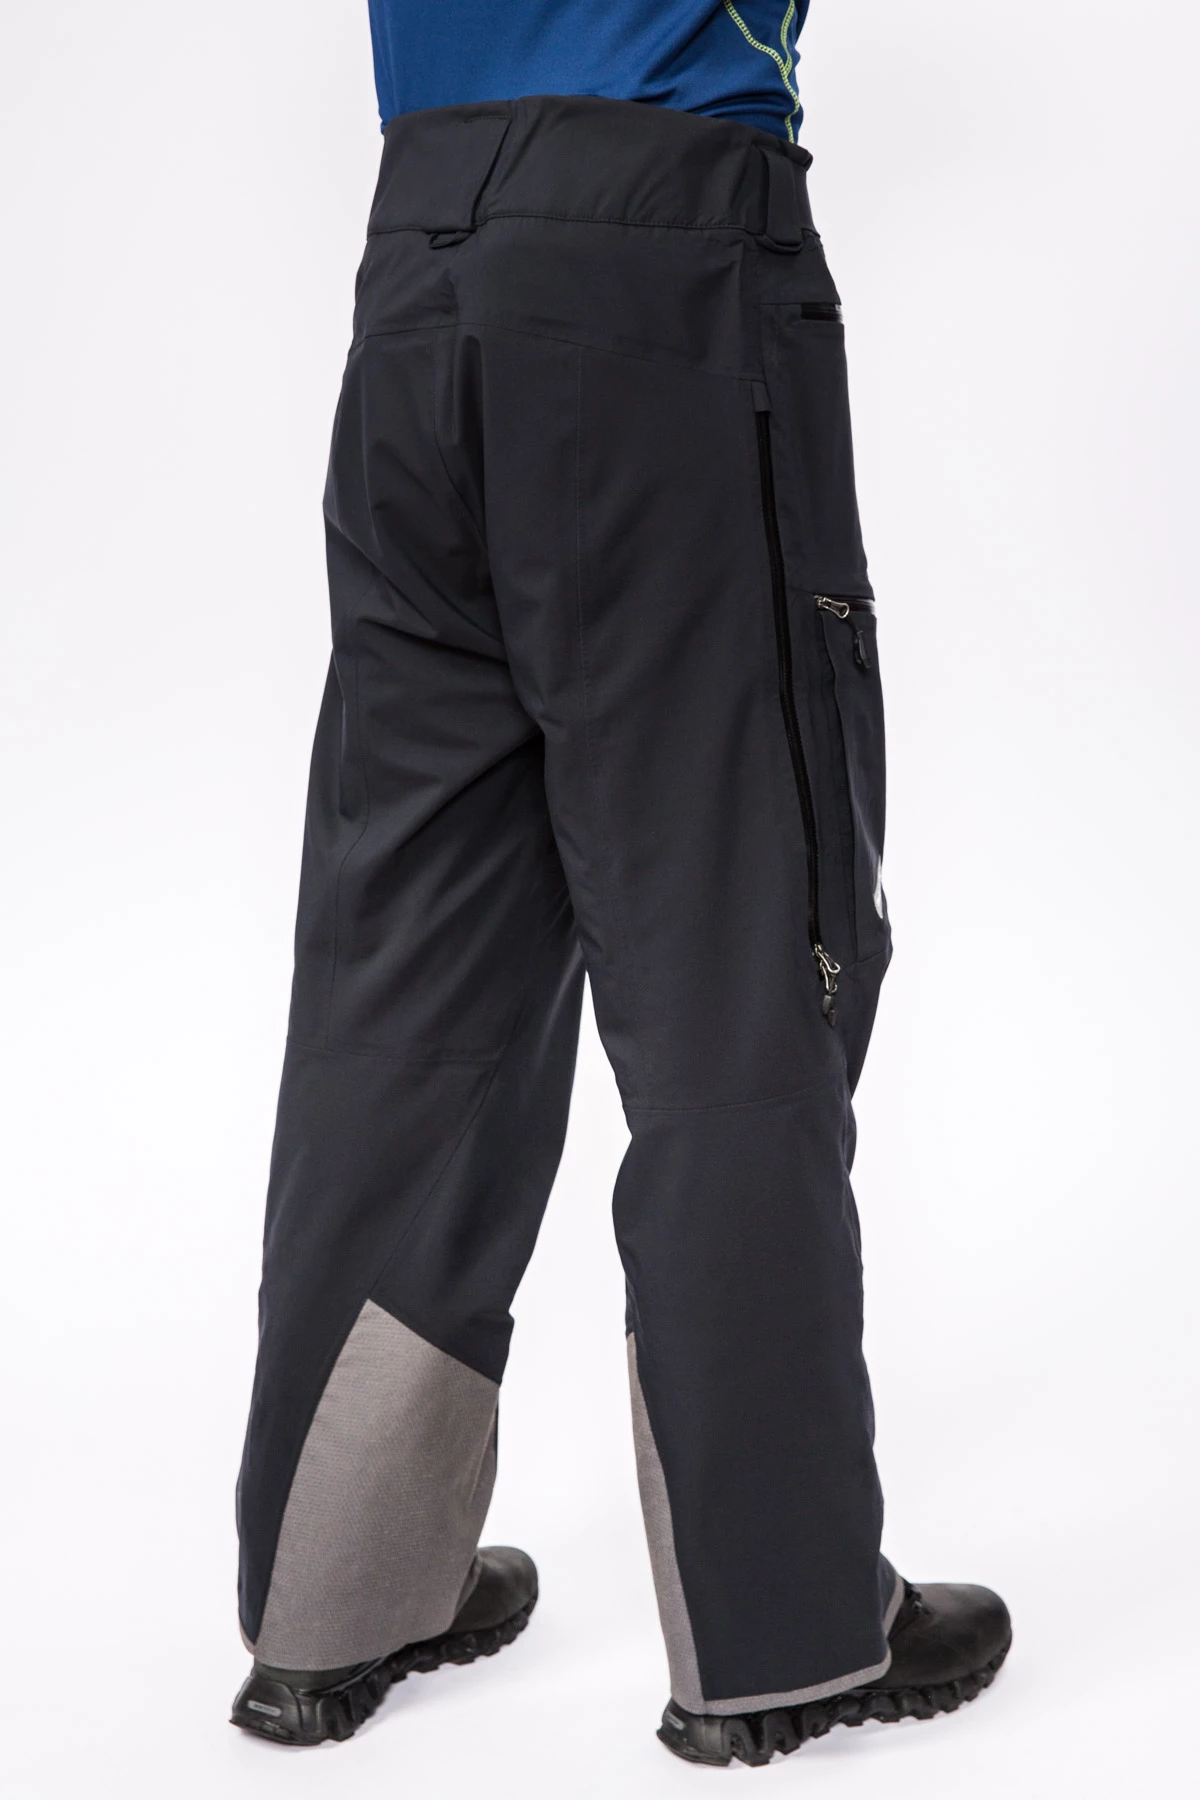 Мембранные брюки Dermizax 3L мужские 17-20915 10 изображение 4